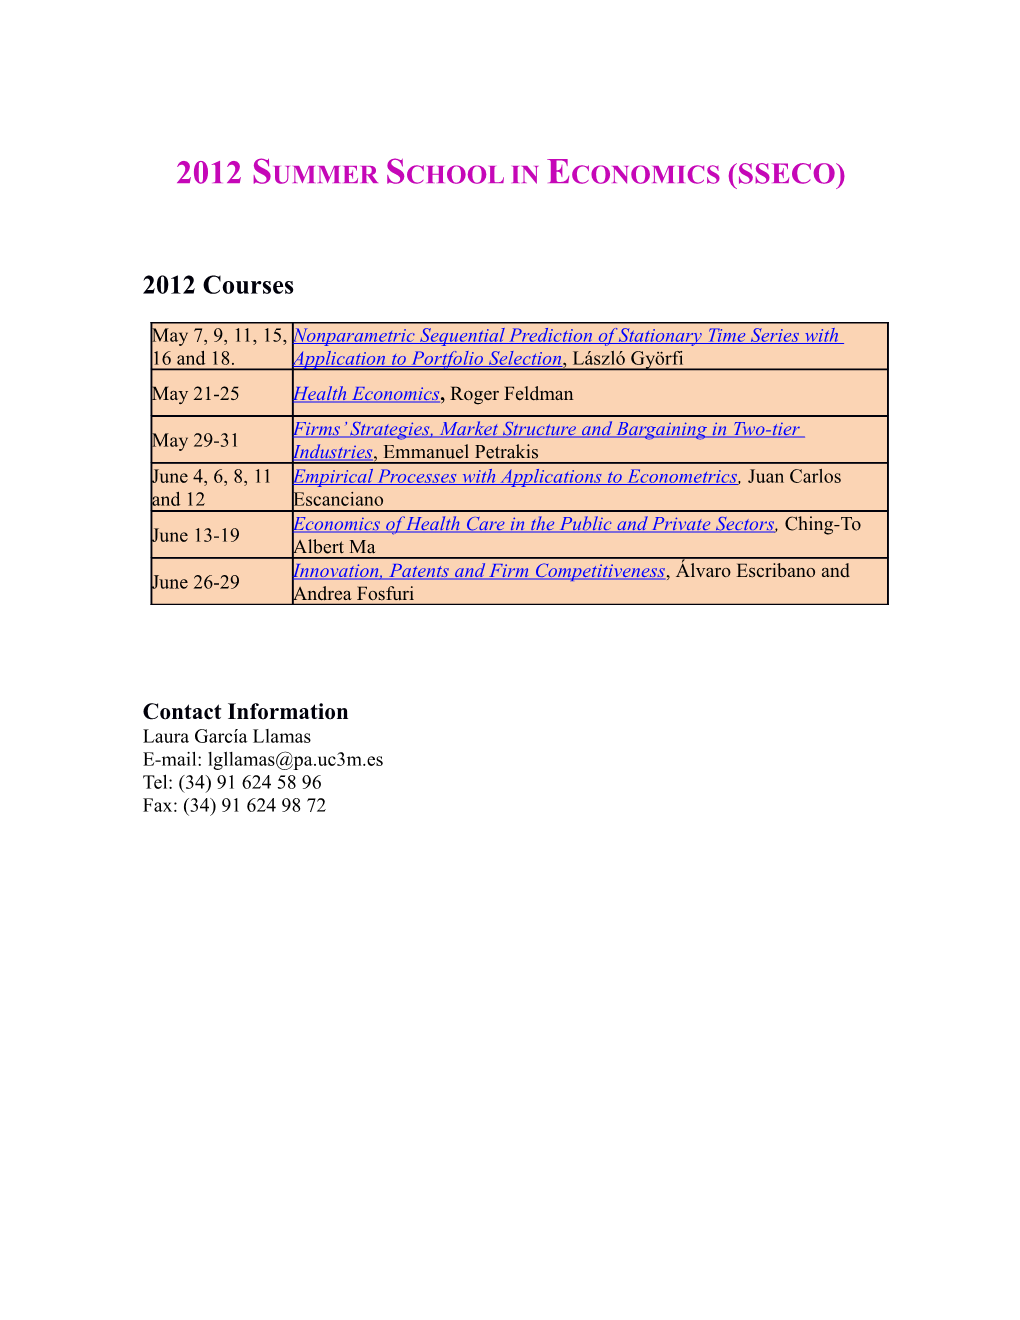 Summer School in Economics (Sseco) 2010